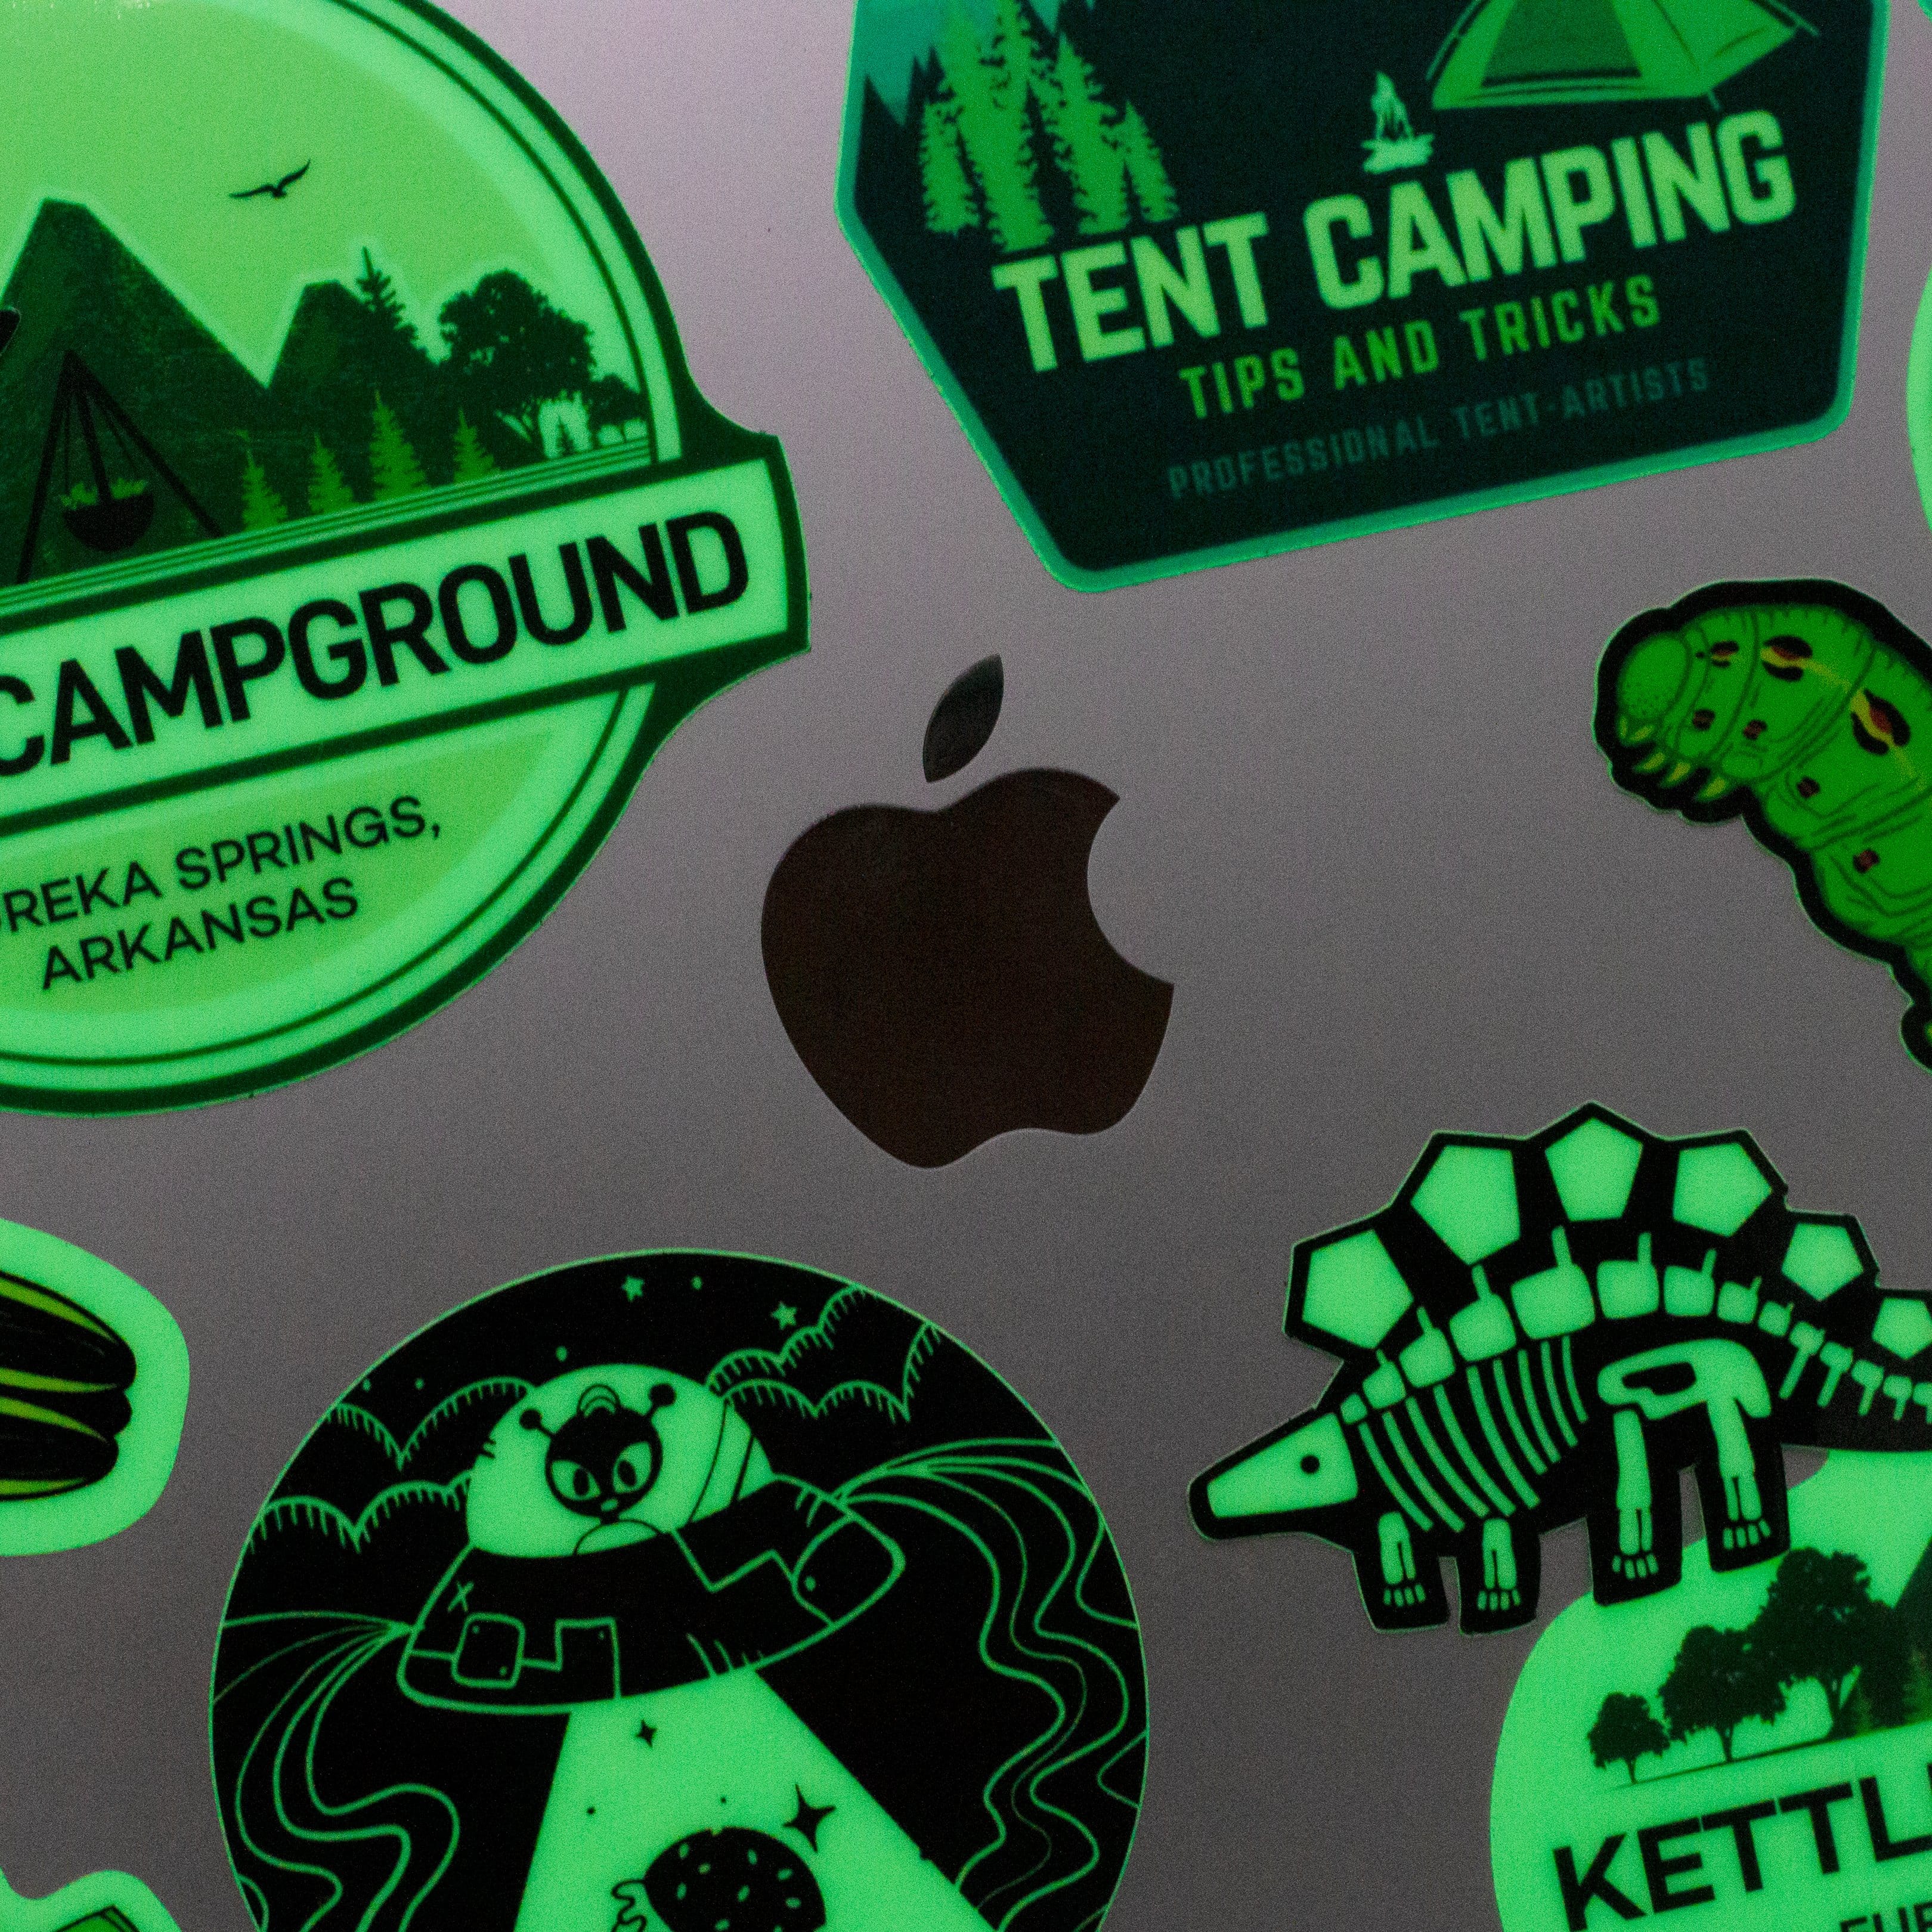 Custom Glow in the Dark Stickers - Sticky Brand